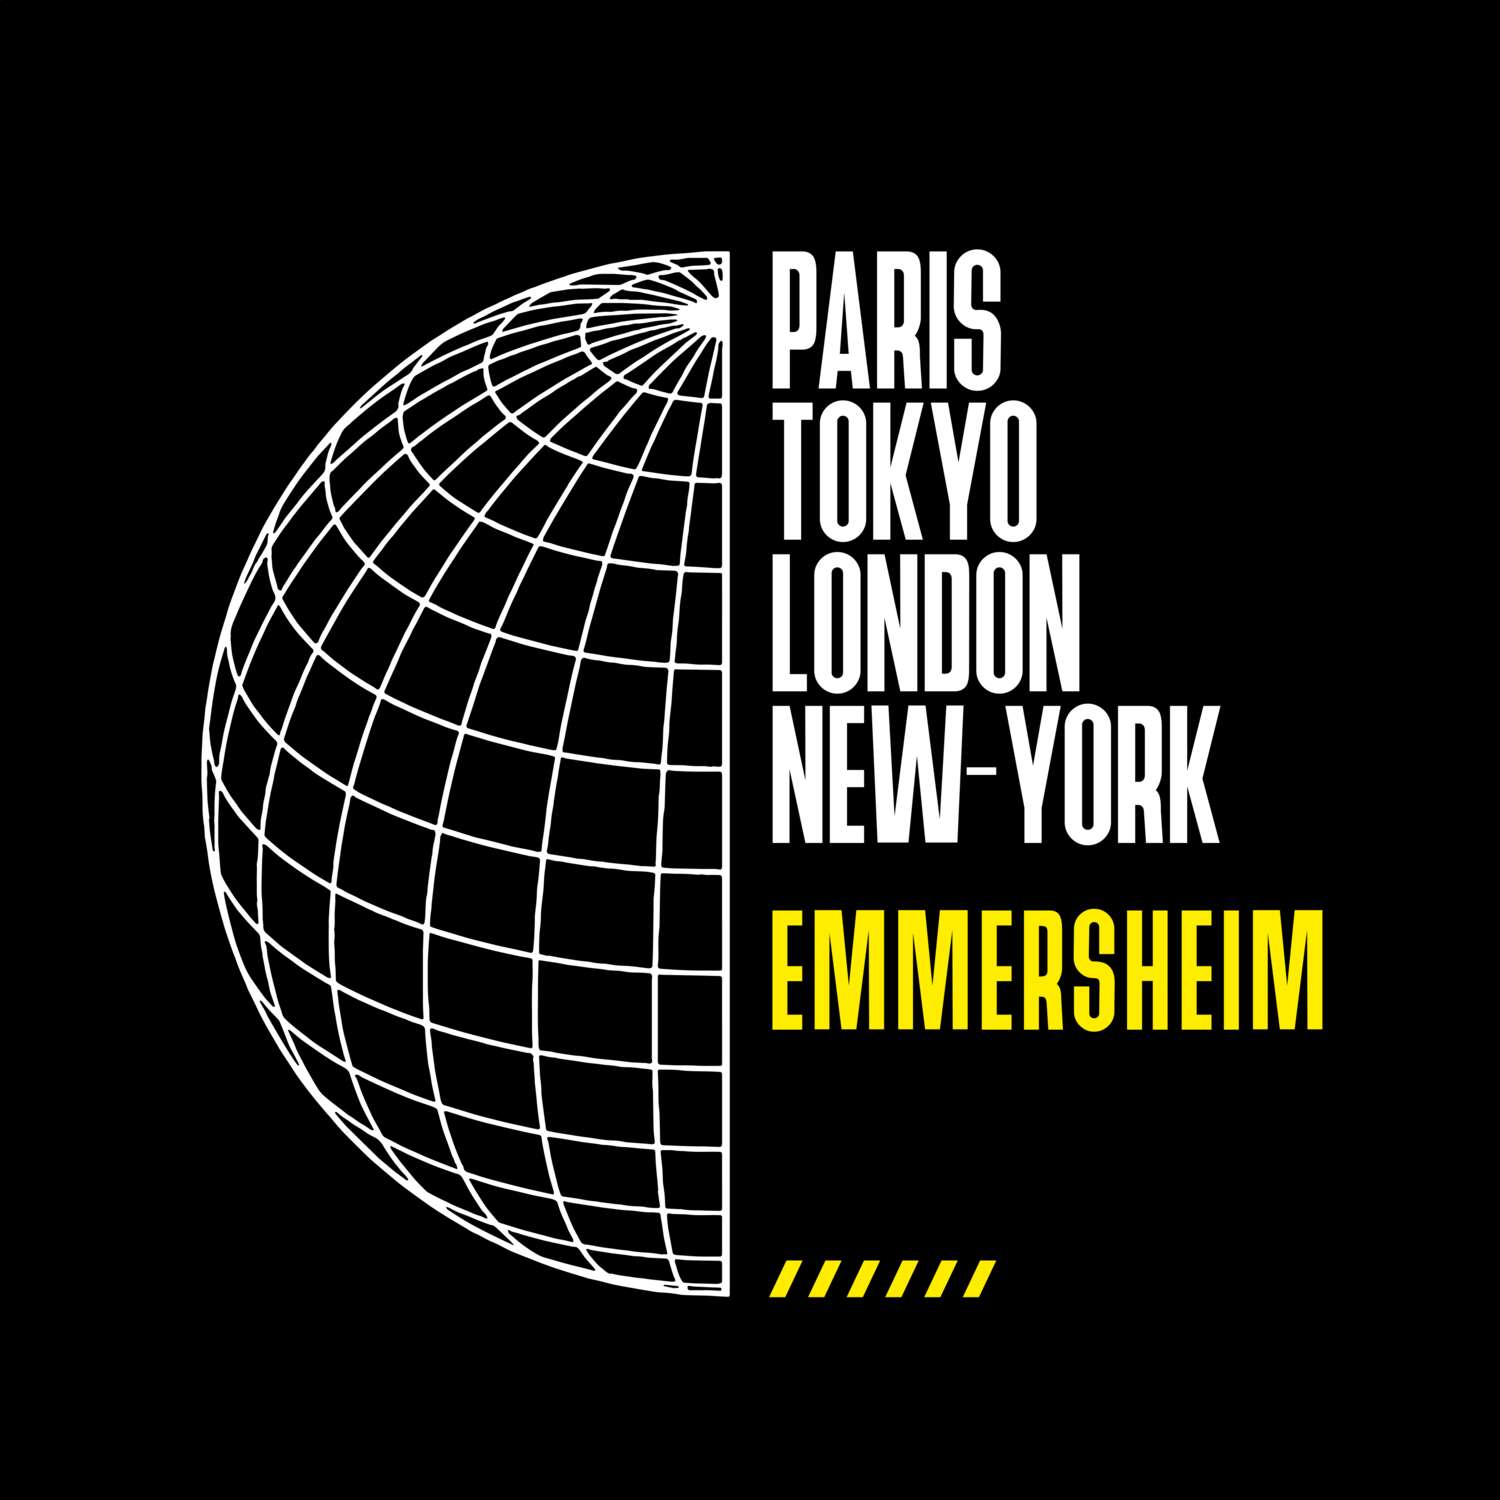 Emmersheim T-Shirt »Paris Tokyo London«